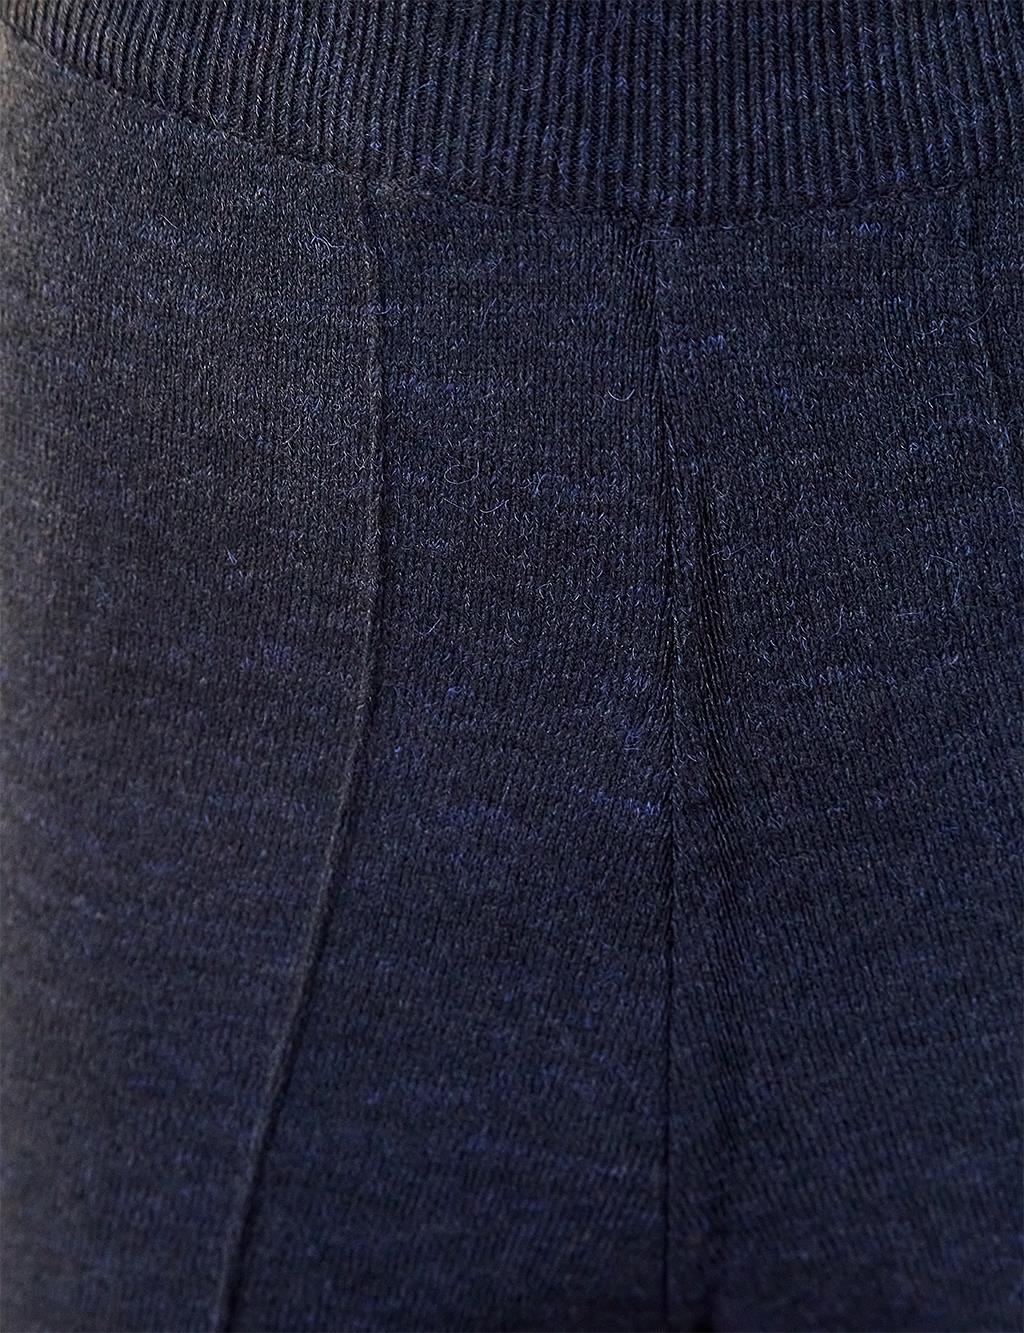 Wide Leg Knitwear Trousers Navy Blue